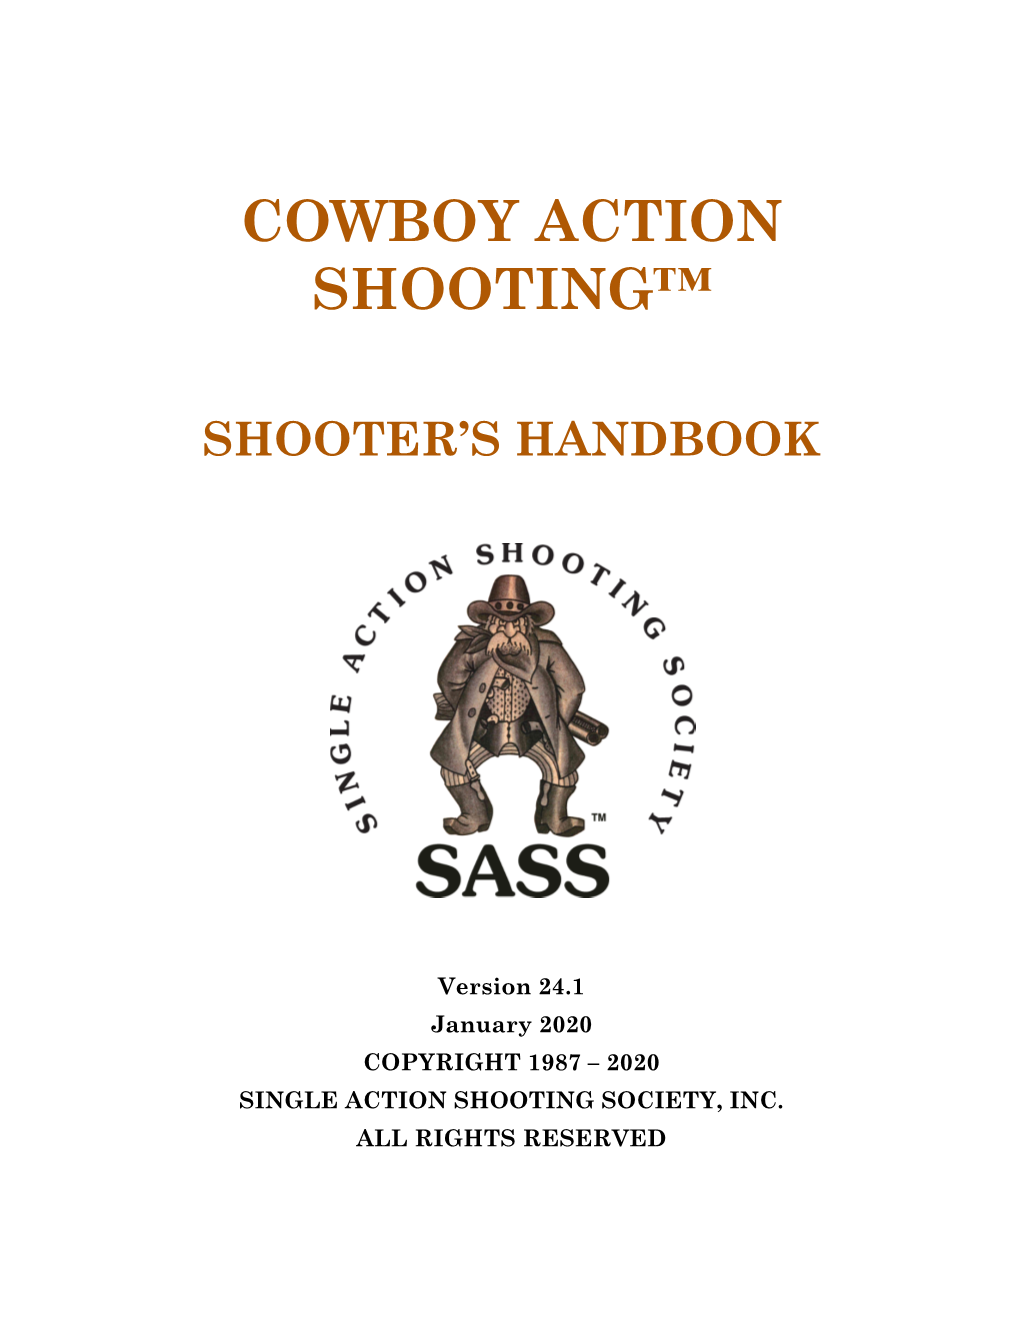 SASS Shooter's Handbook